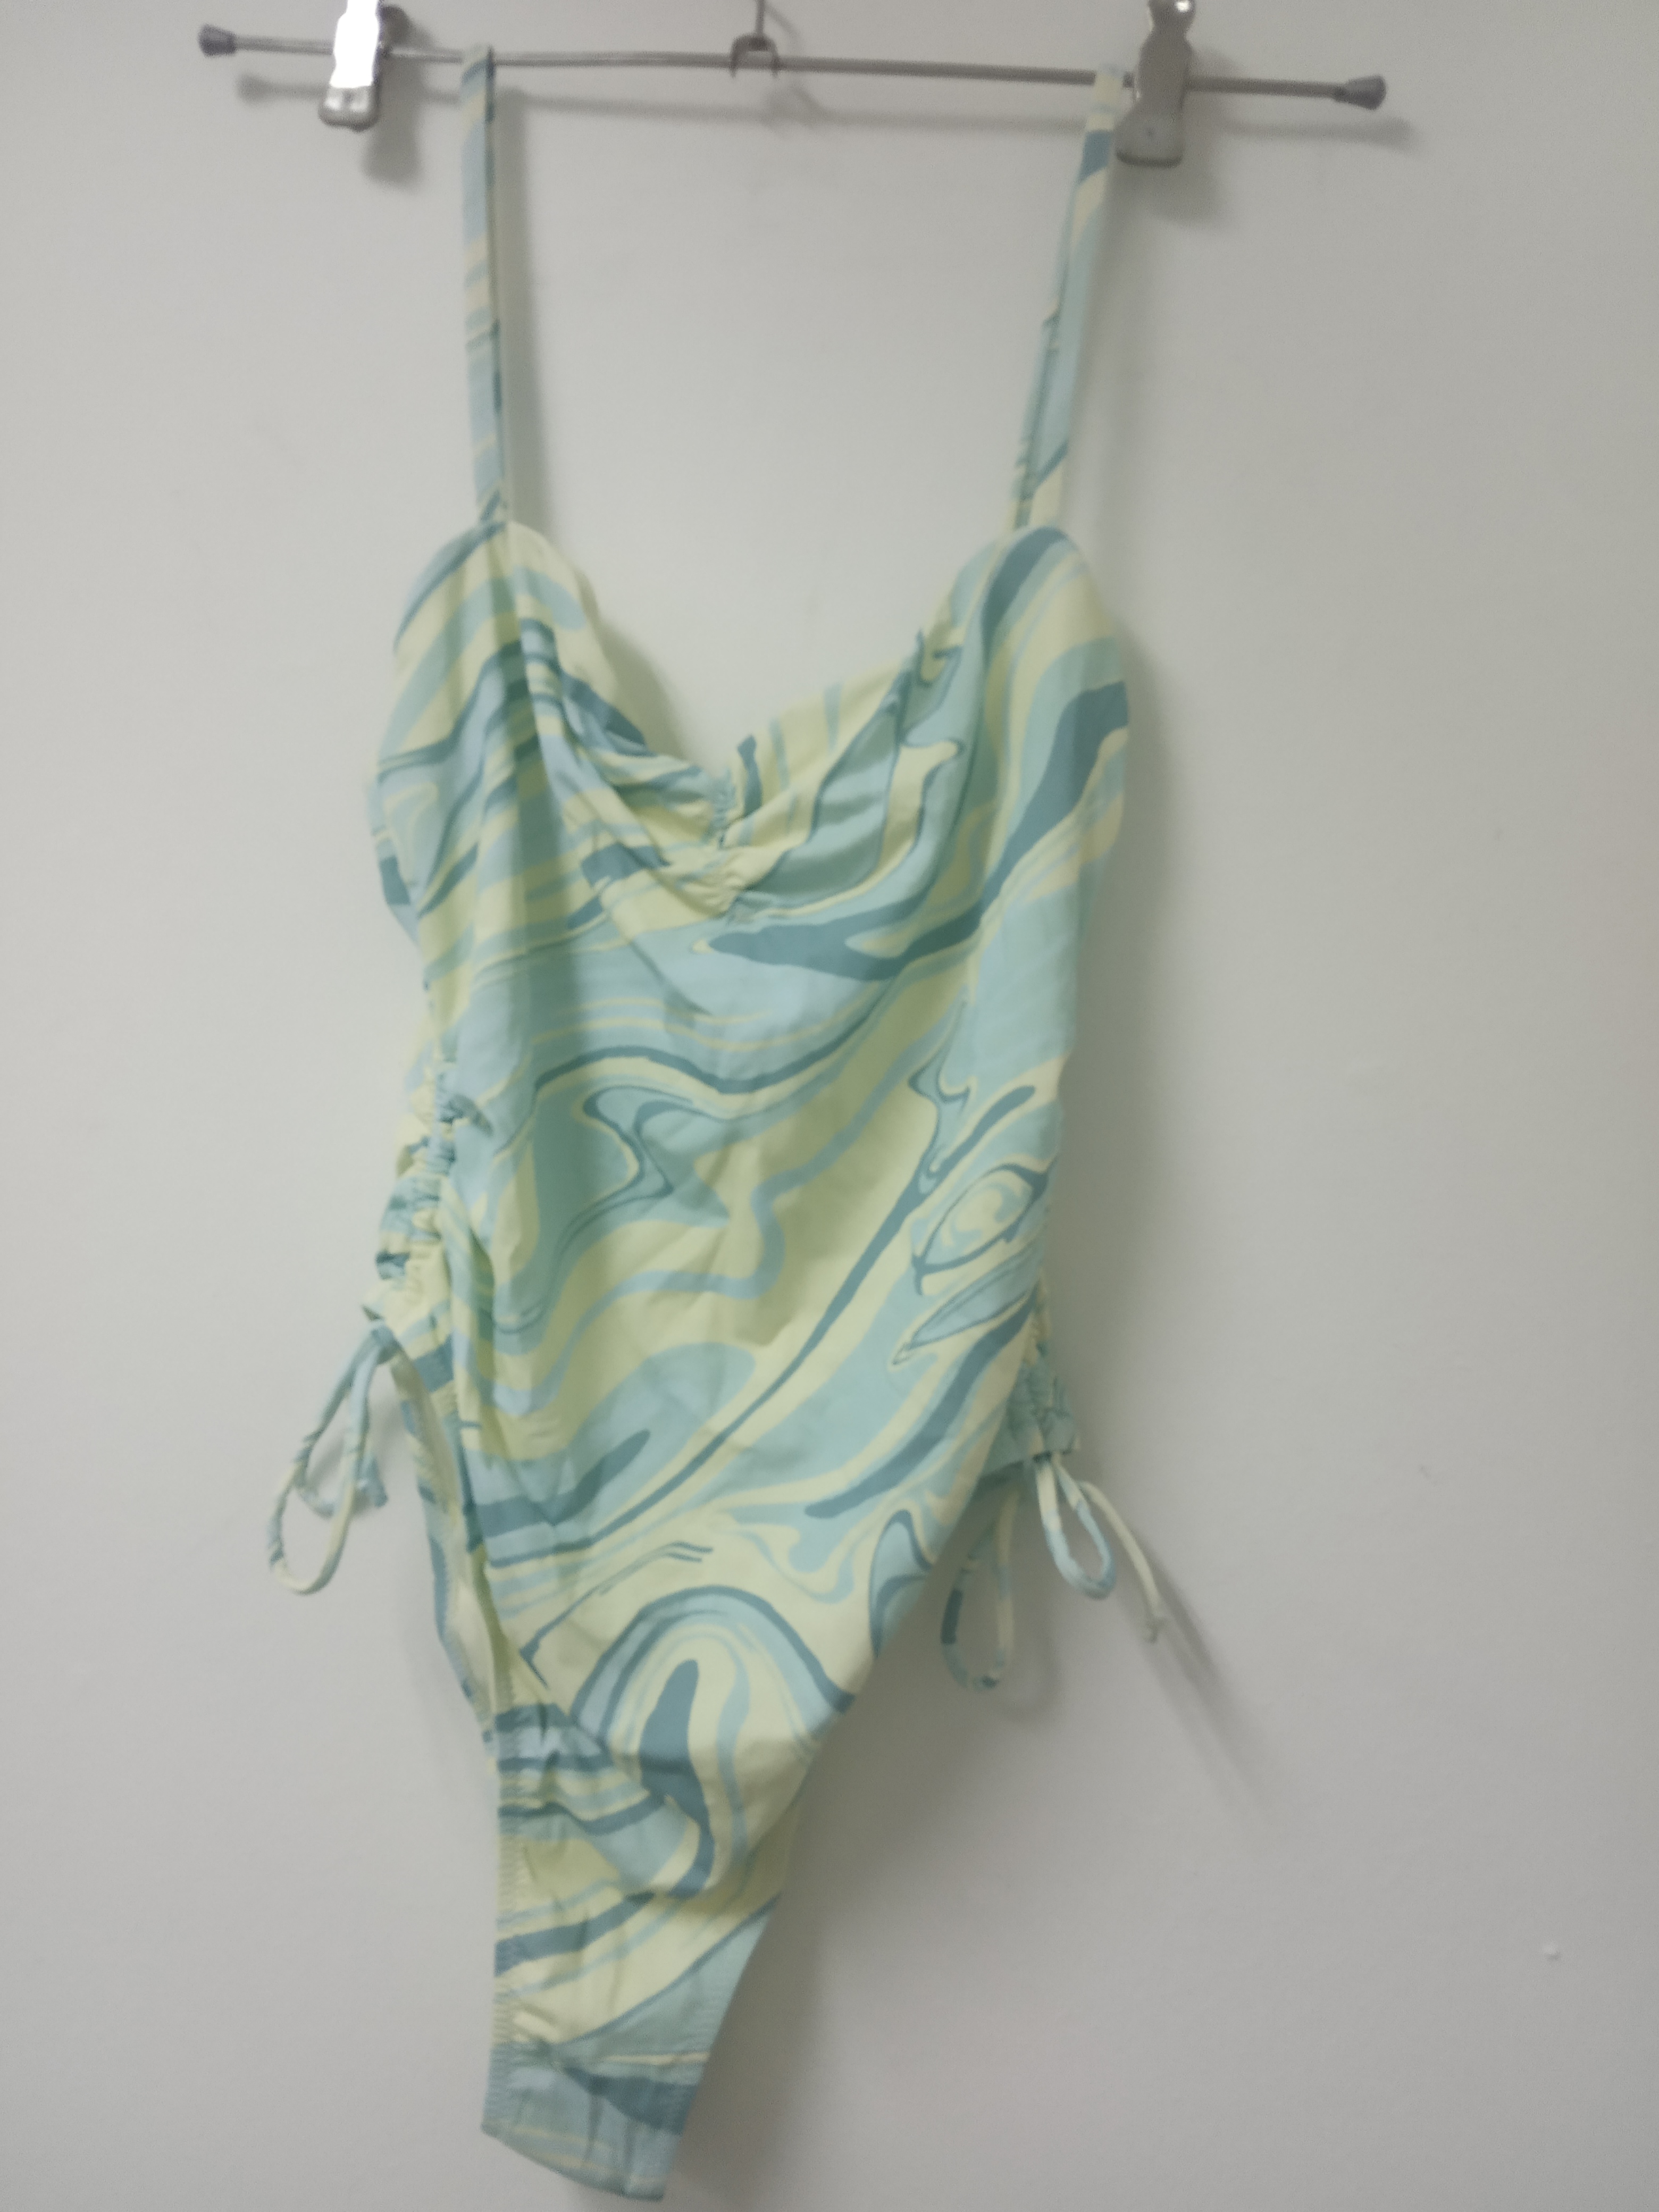 תמונה 2 ,בגד ים מנגו חדש למכירה בתל אביב ביגוד ואביזרים  בגדי ים